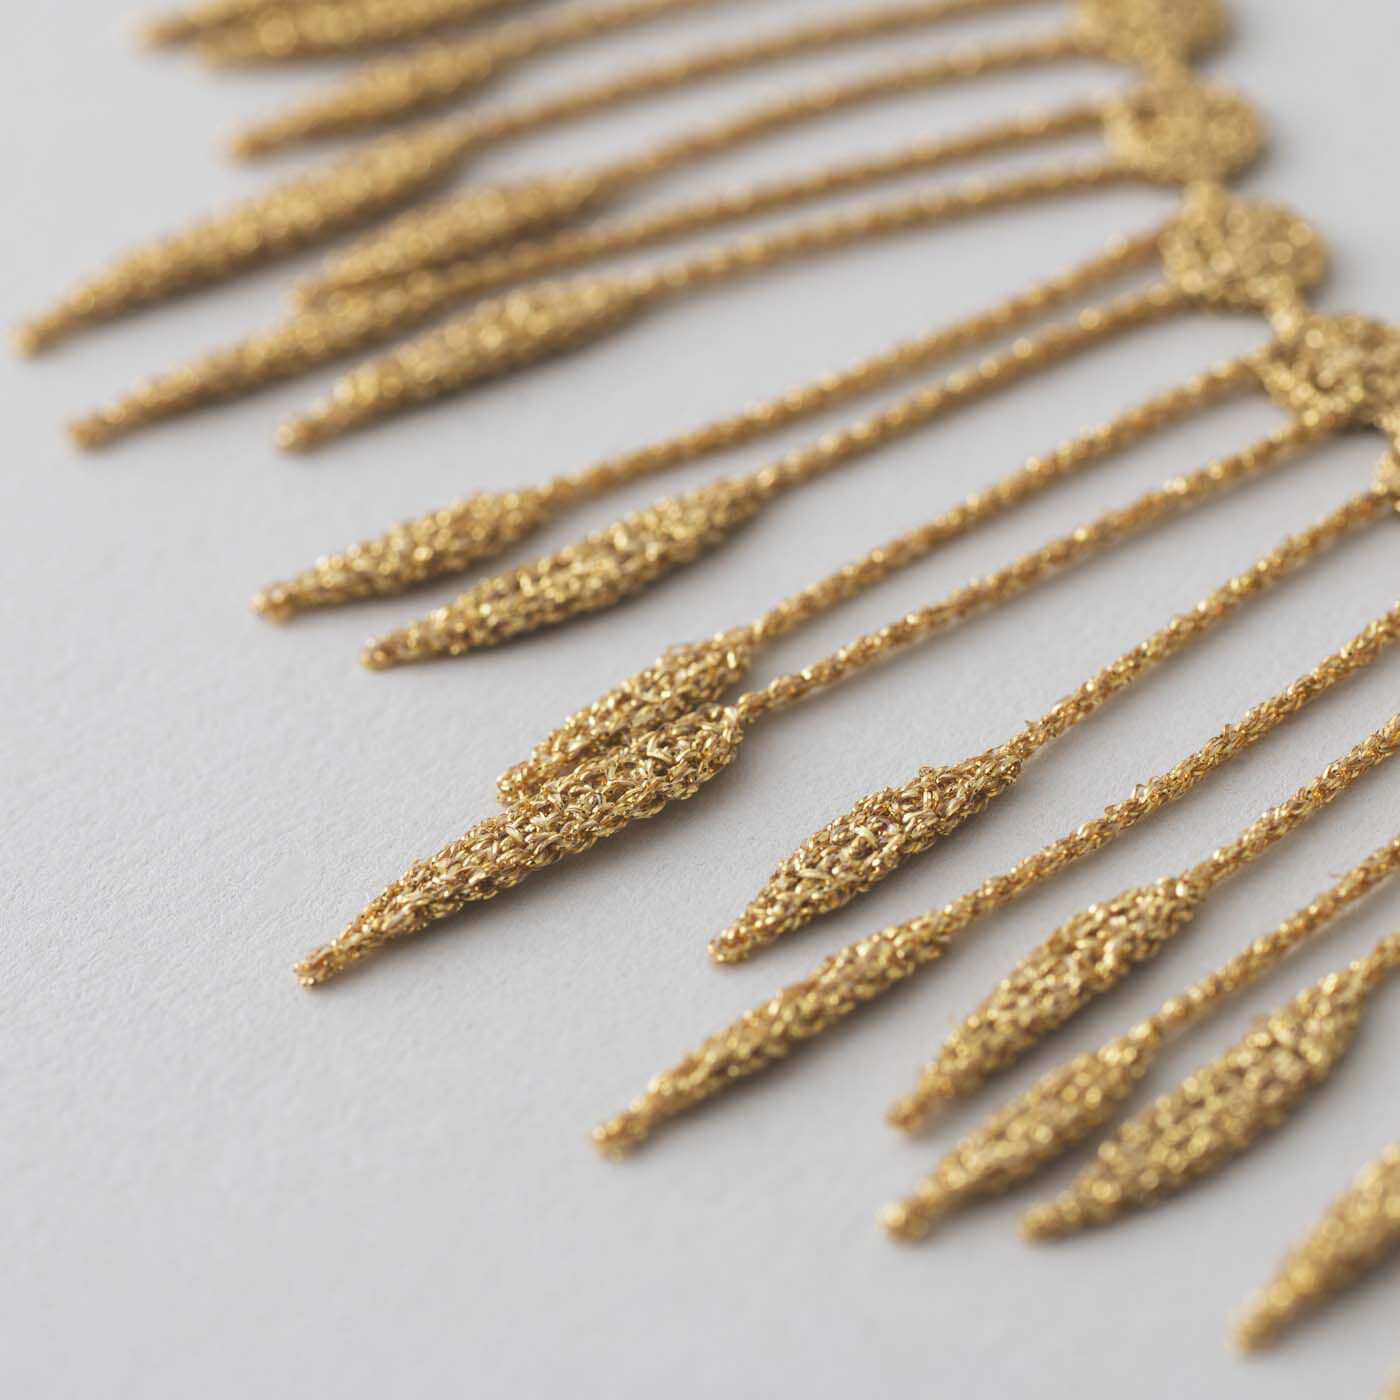 ＆Stories|群馬の刺繍工房が作った 糸の宝石のプランツネックレス〈ゴールド色〉